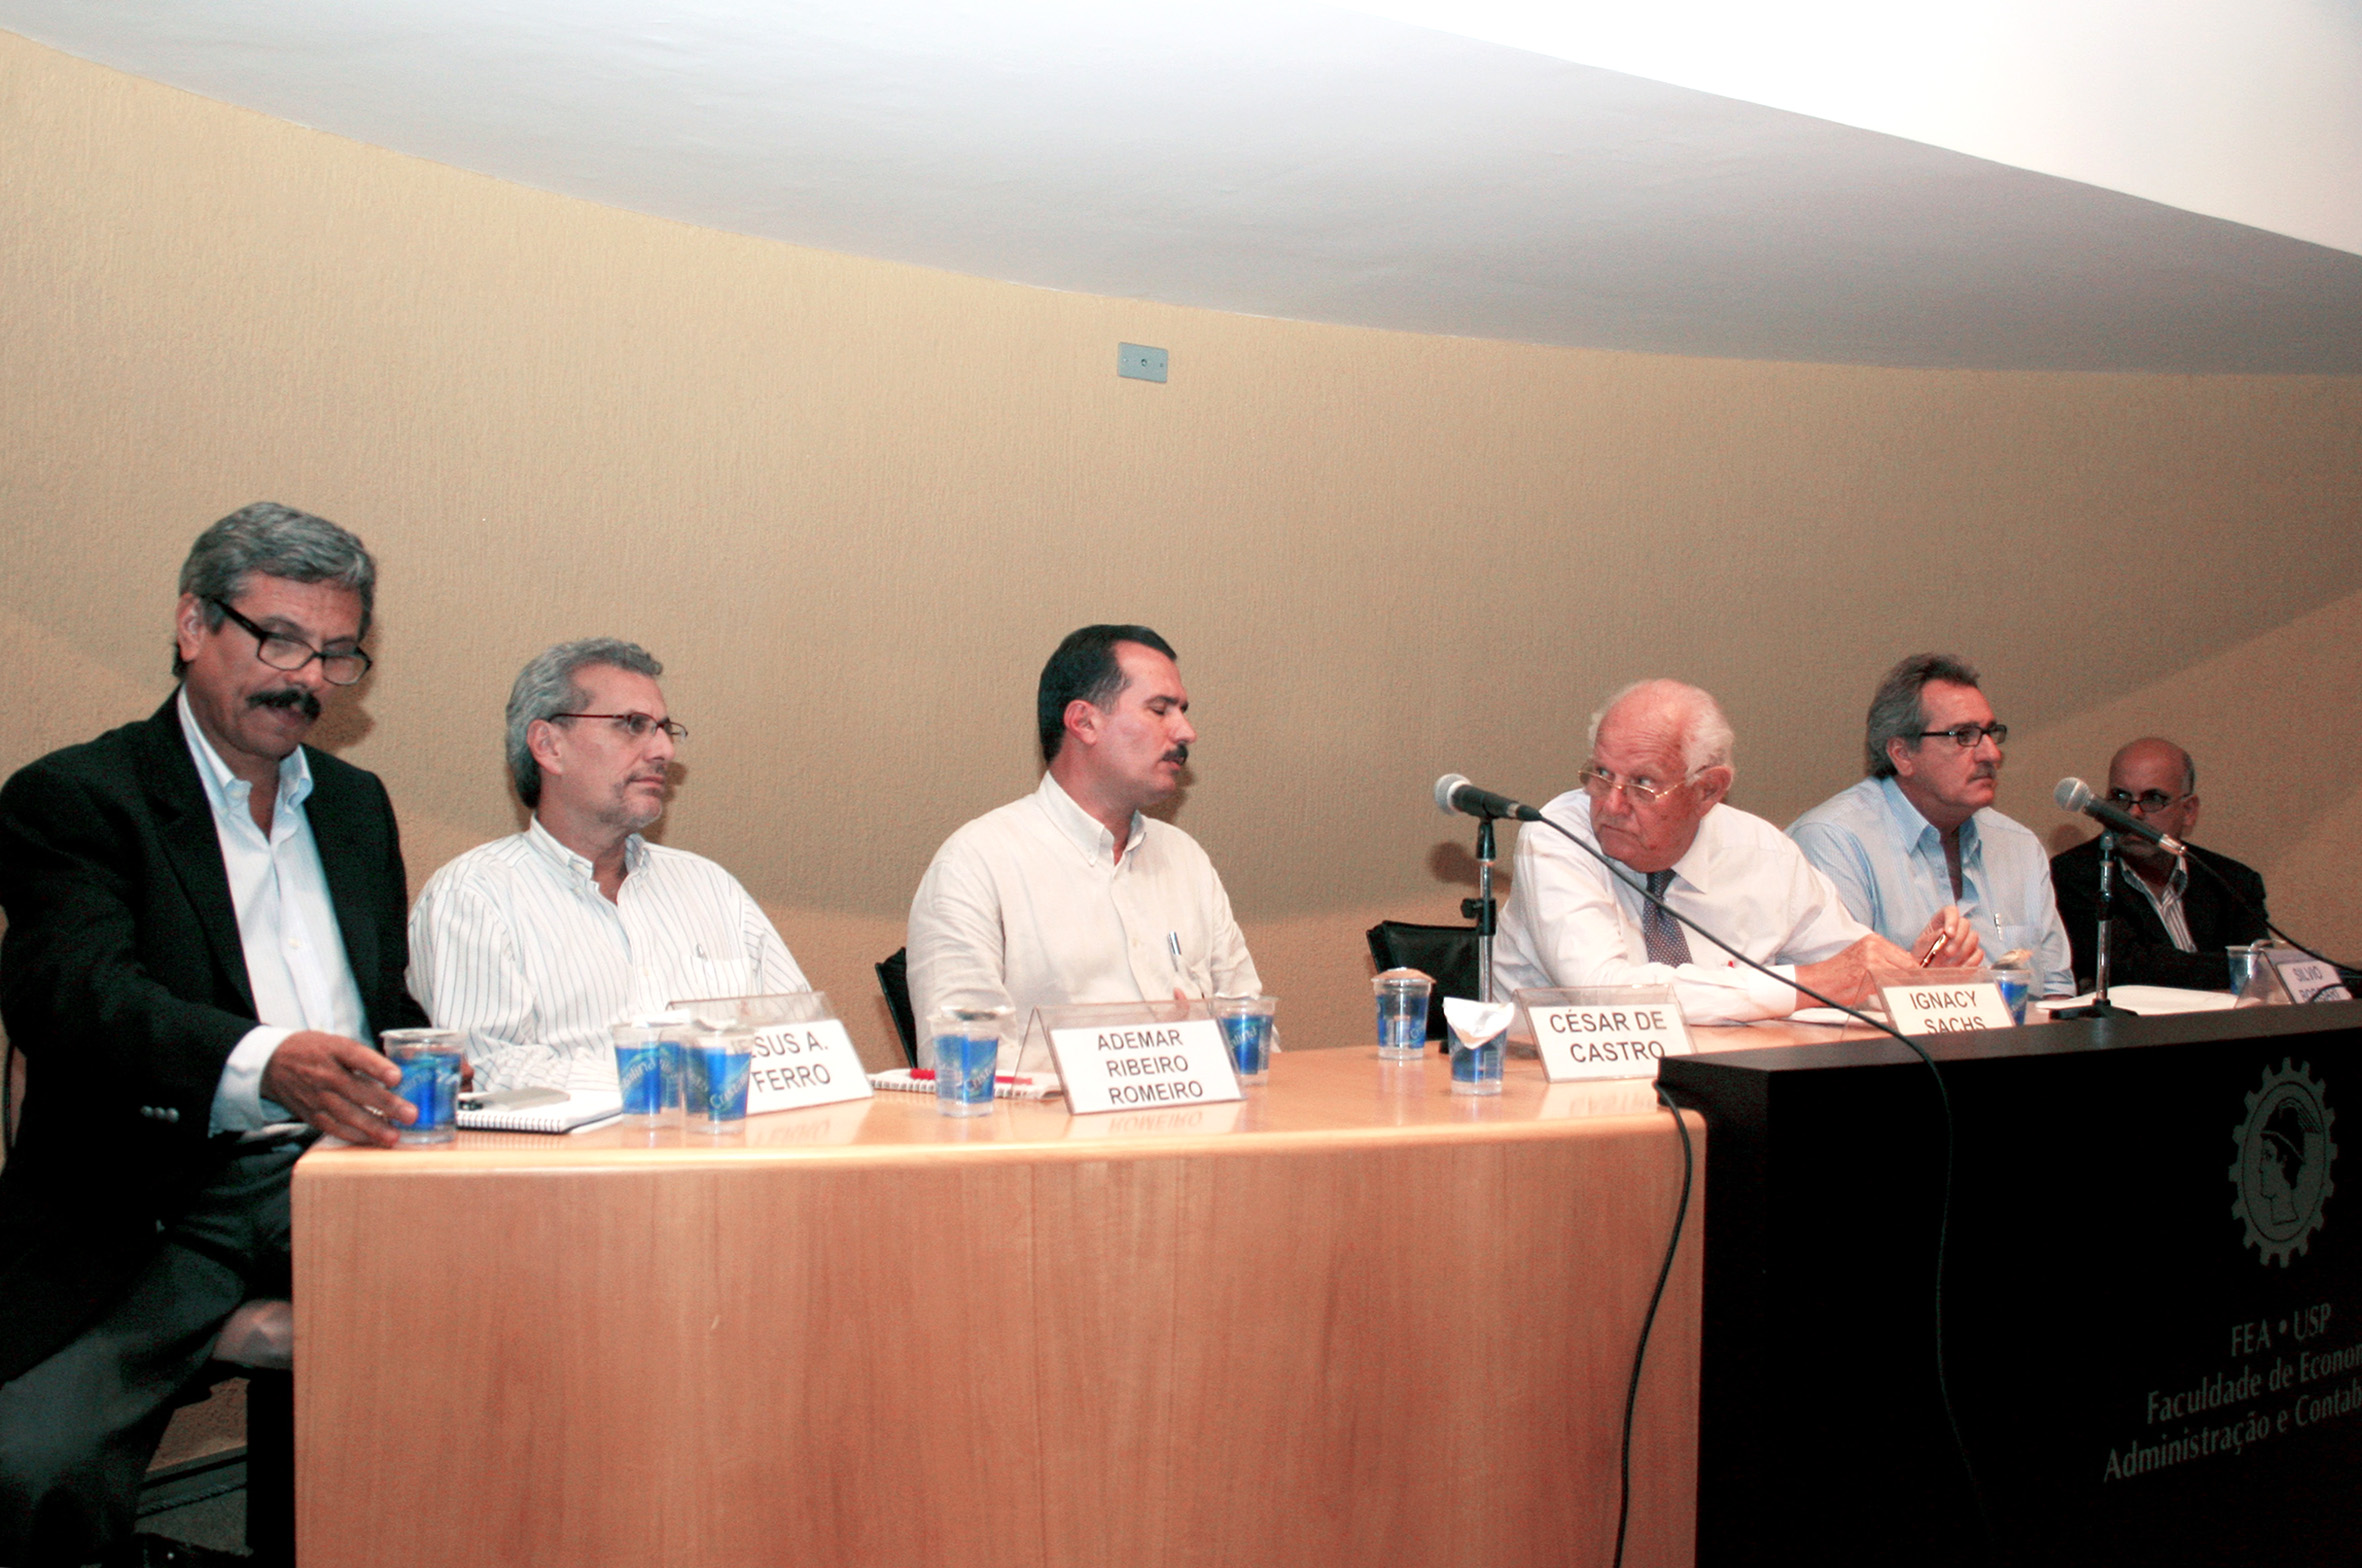 Jesus A. Ferro, Ademar Ribeiro Romeiro, César de Castro, Ignacy Sachs, Silvio Borsari e Marcos Landell